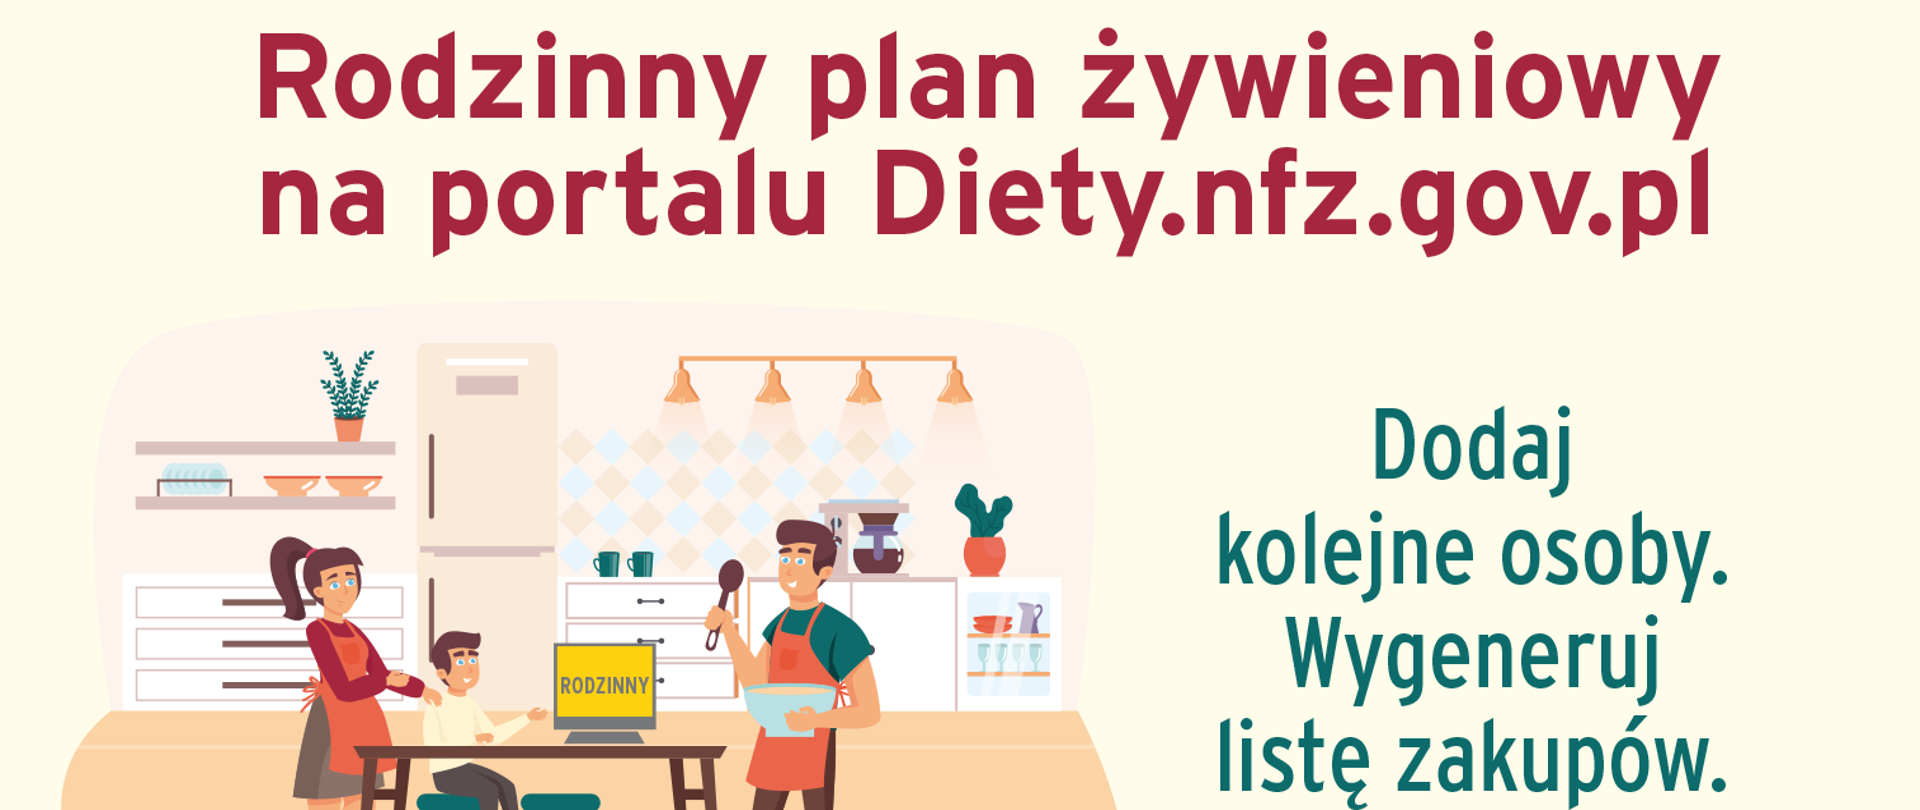 Rodzinny plan żywieniowy na portalu diety.nfz.gov.pl. Dodaj kolejne osoby, wygeneruj listę zakupów, mądrze wybieraj, kupuj świadomie. Przygotuj wspólny posiłek.